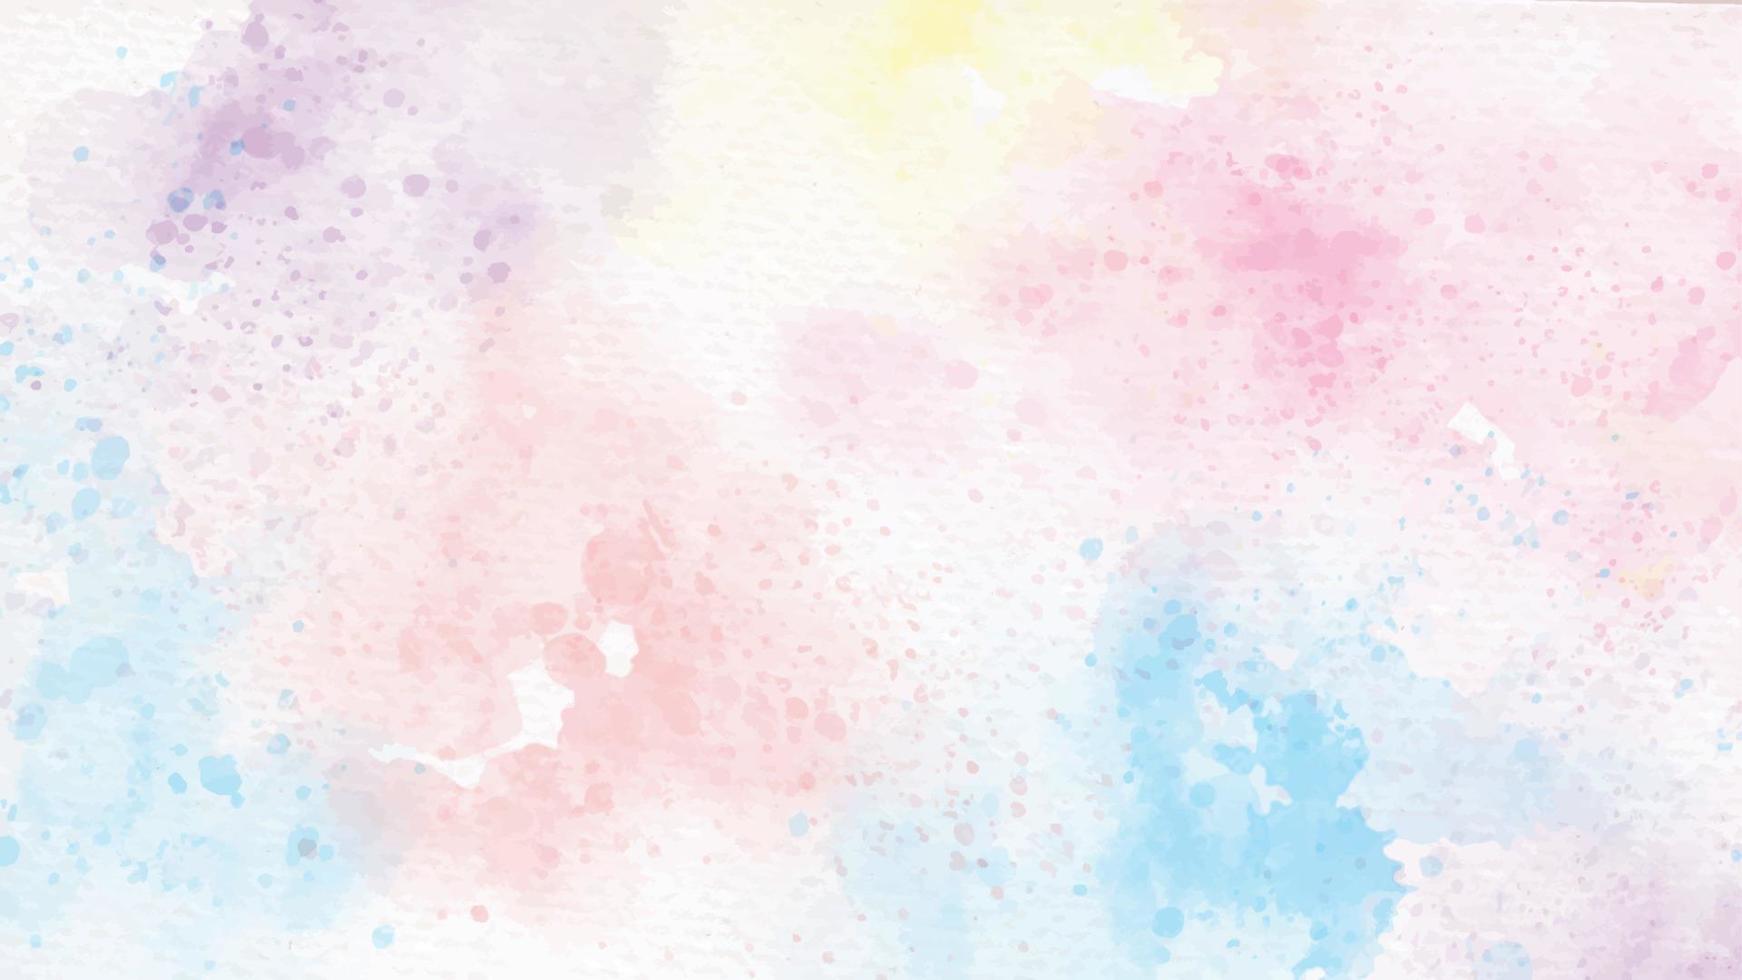 regenboog pastel eenhoorn snoep aquarel op papier abstracte achtergrond vector